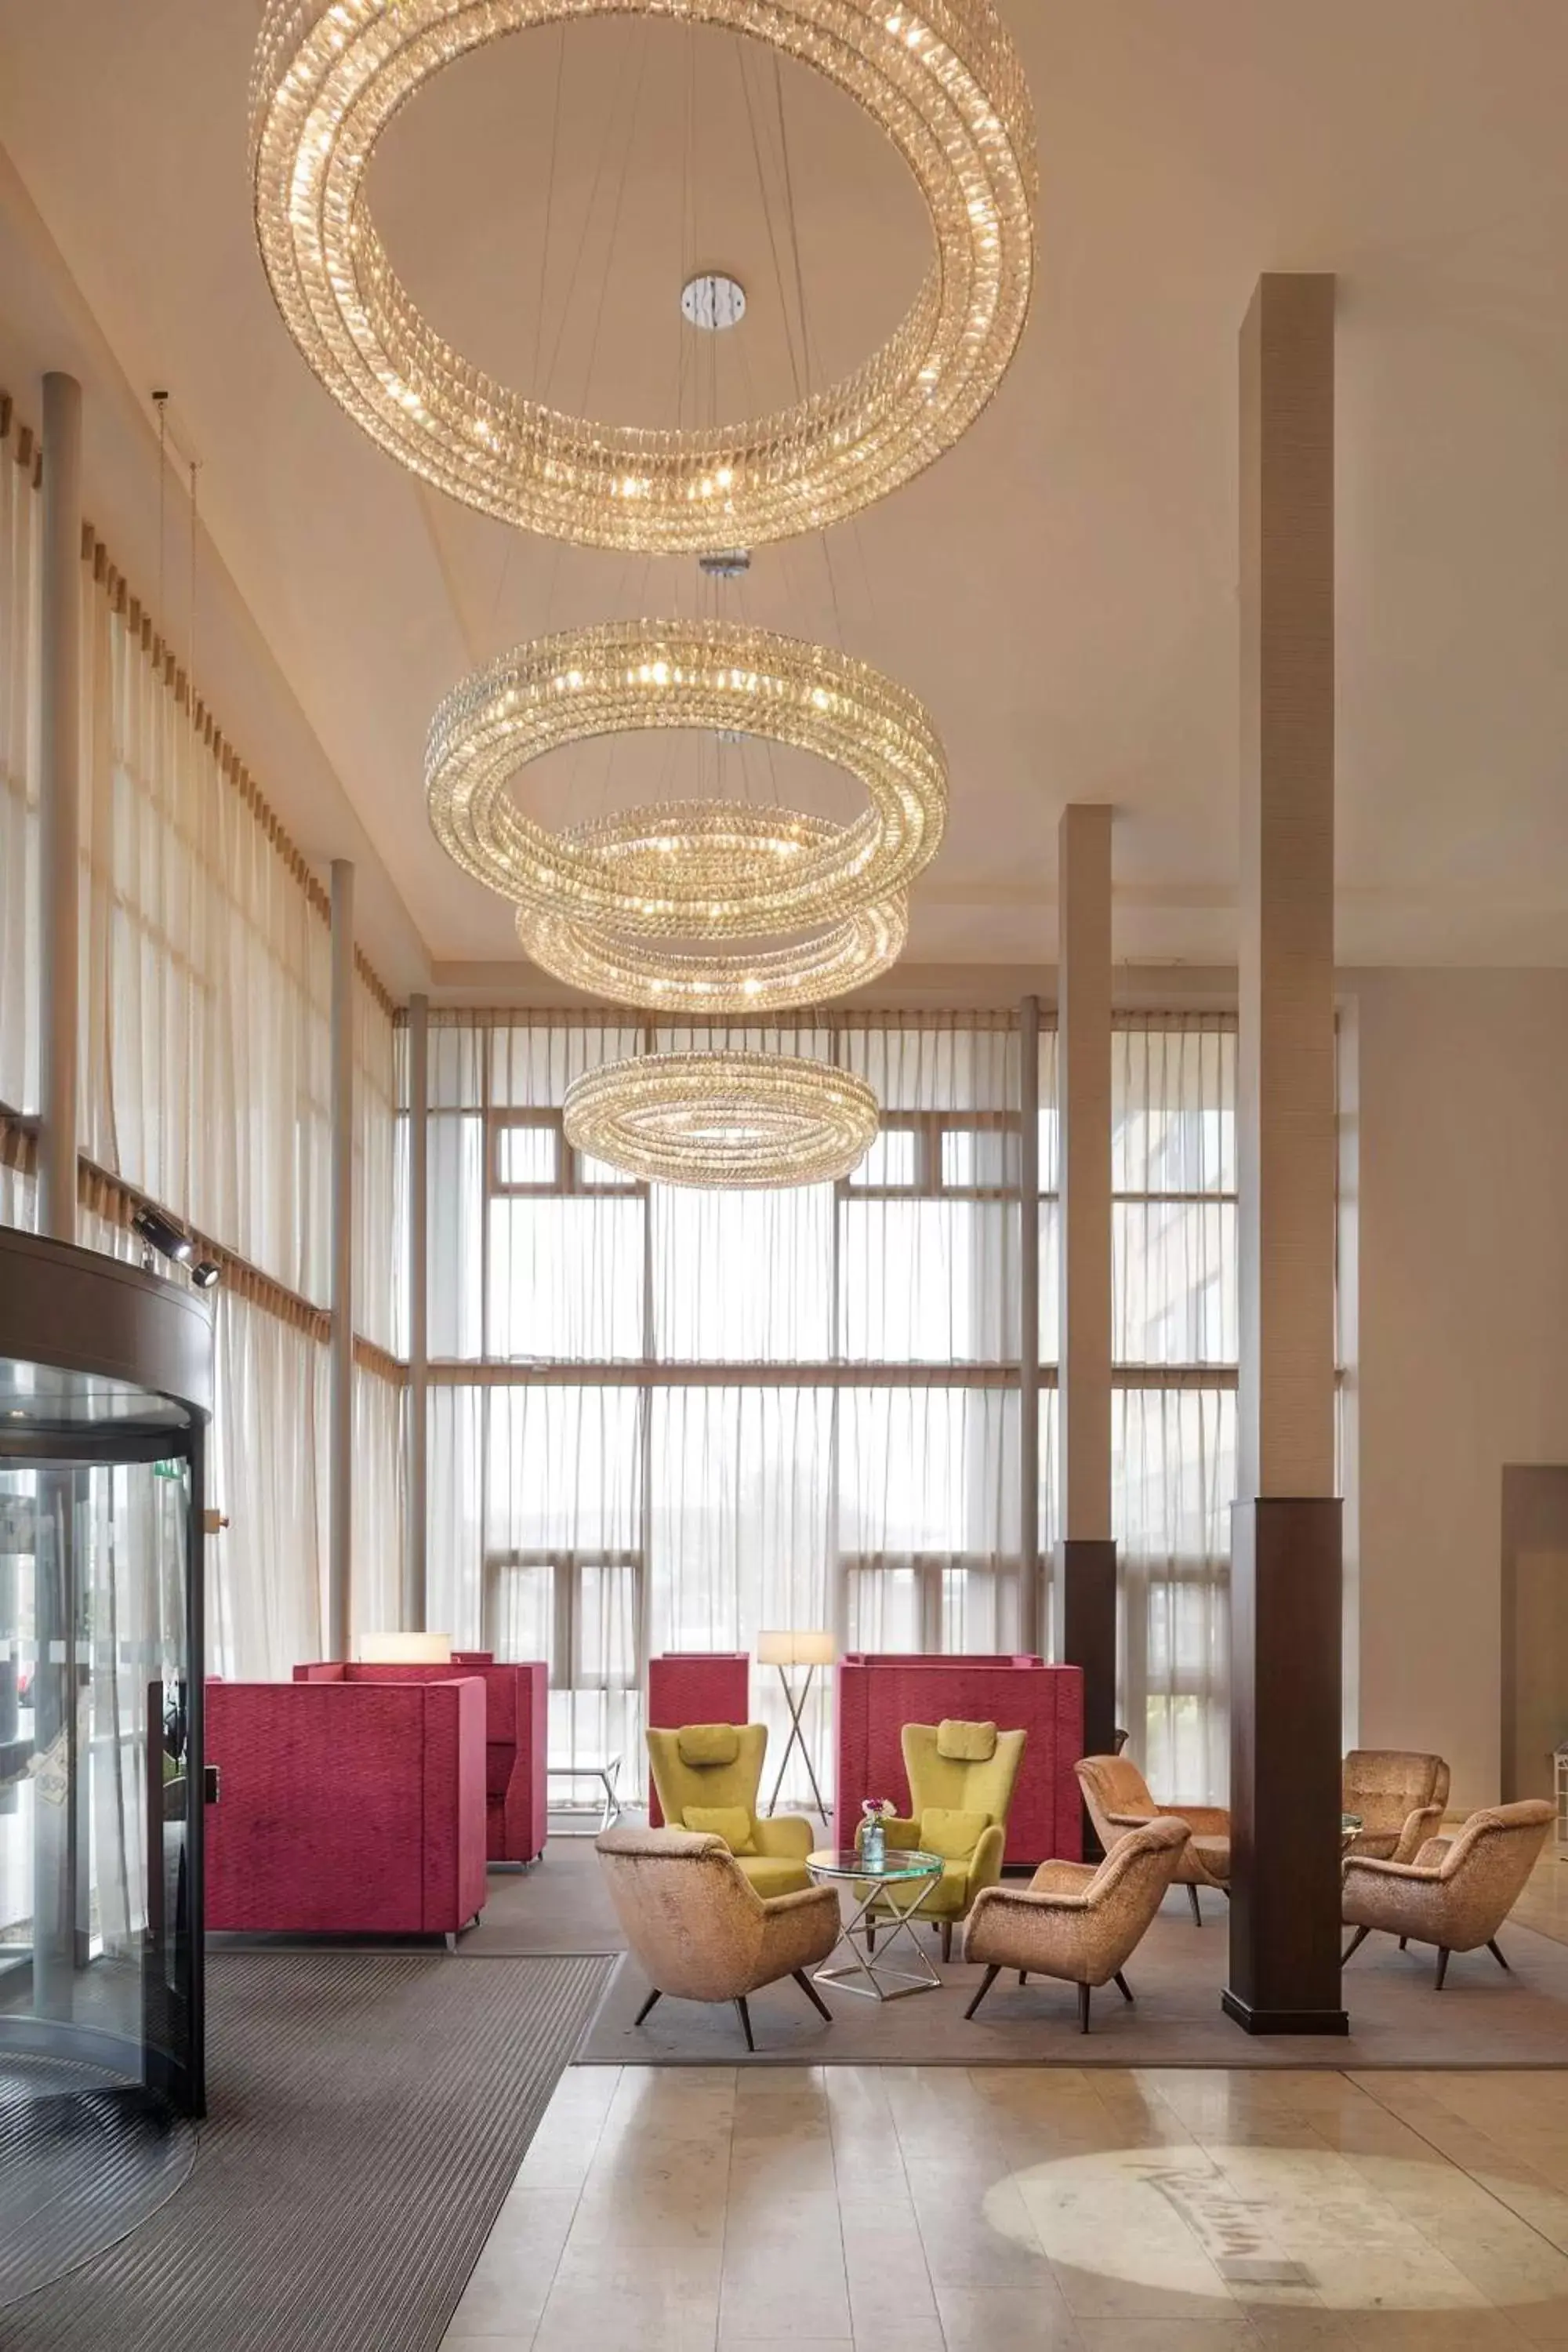 Lobby or reception in Radisson Blu Hotel, Letterkenny